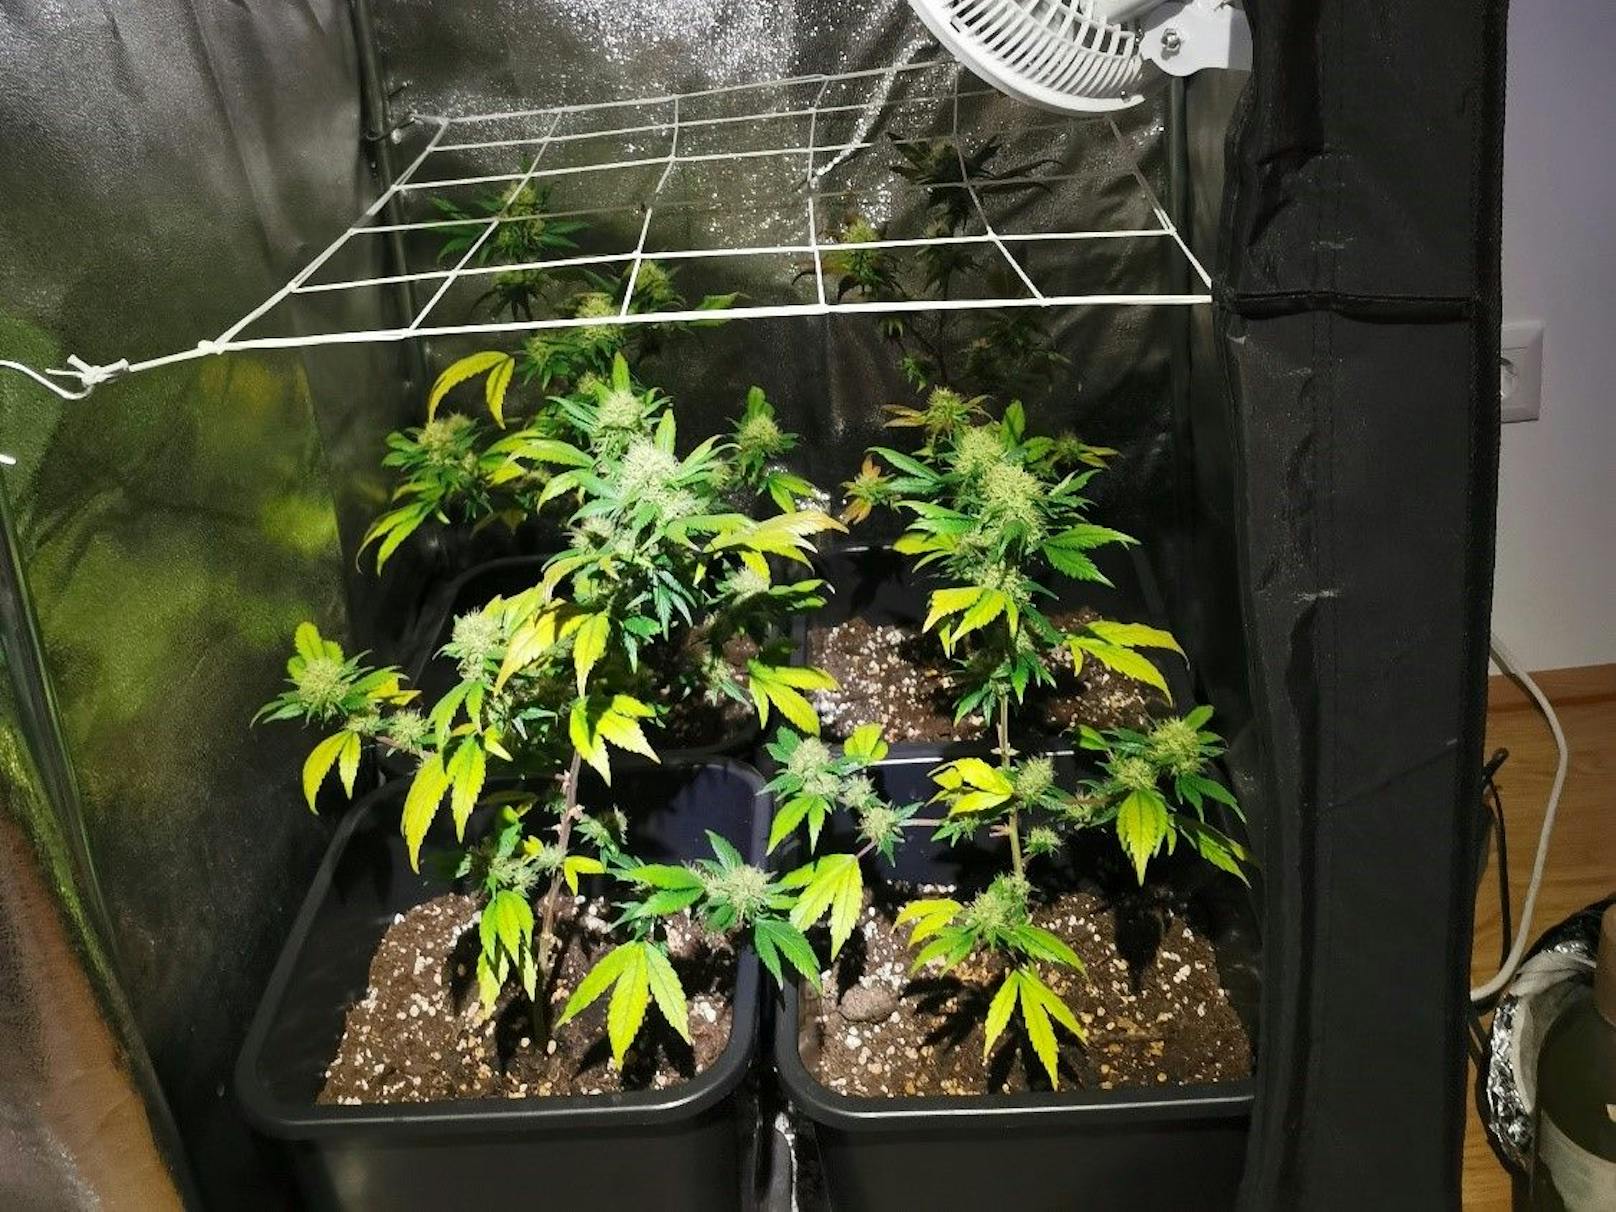 Cannabis-Pflanzen wurden neben der Tatwaffe von der Polizei sichergestellt.